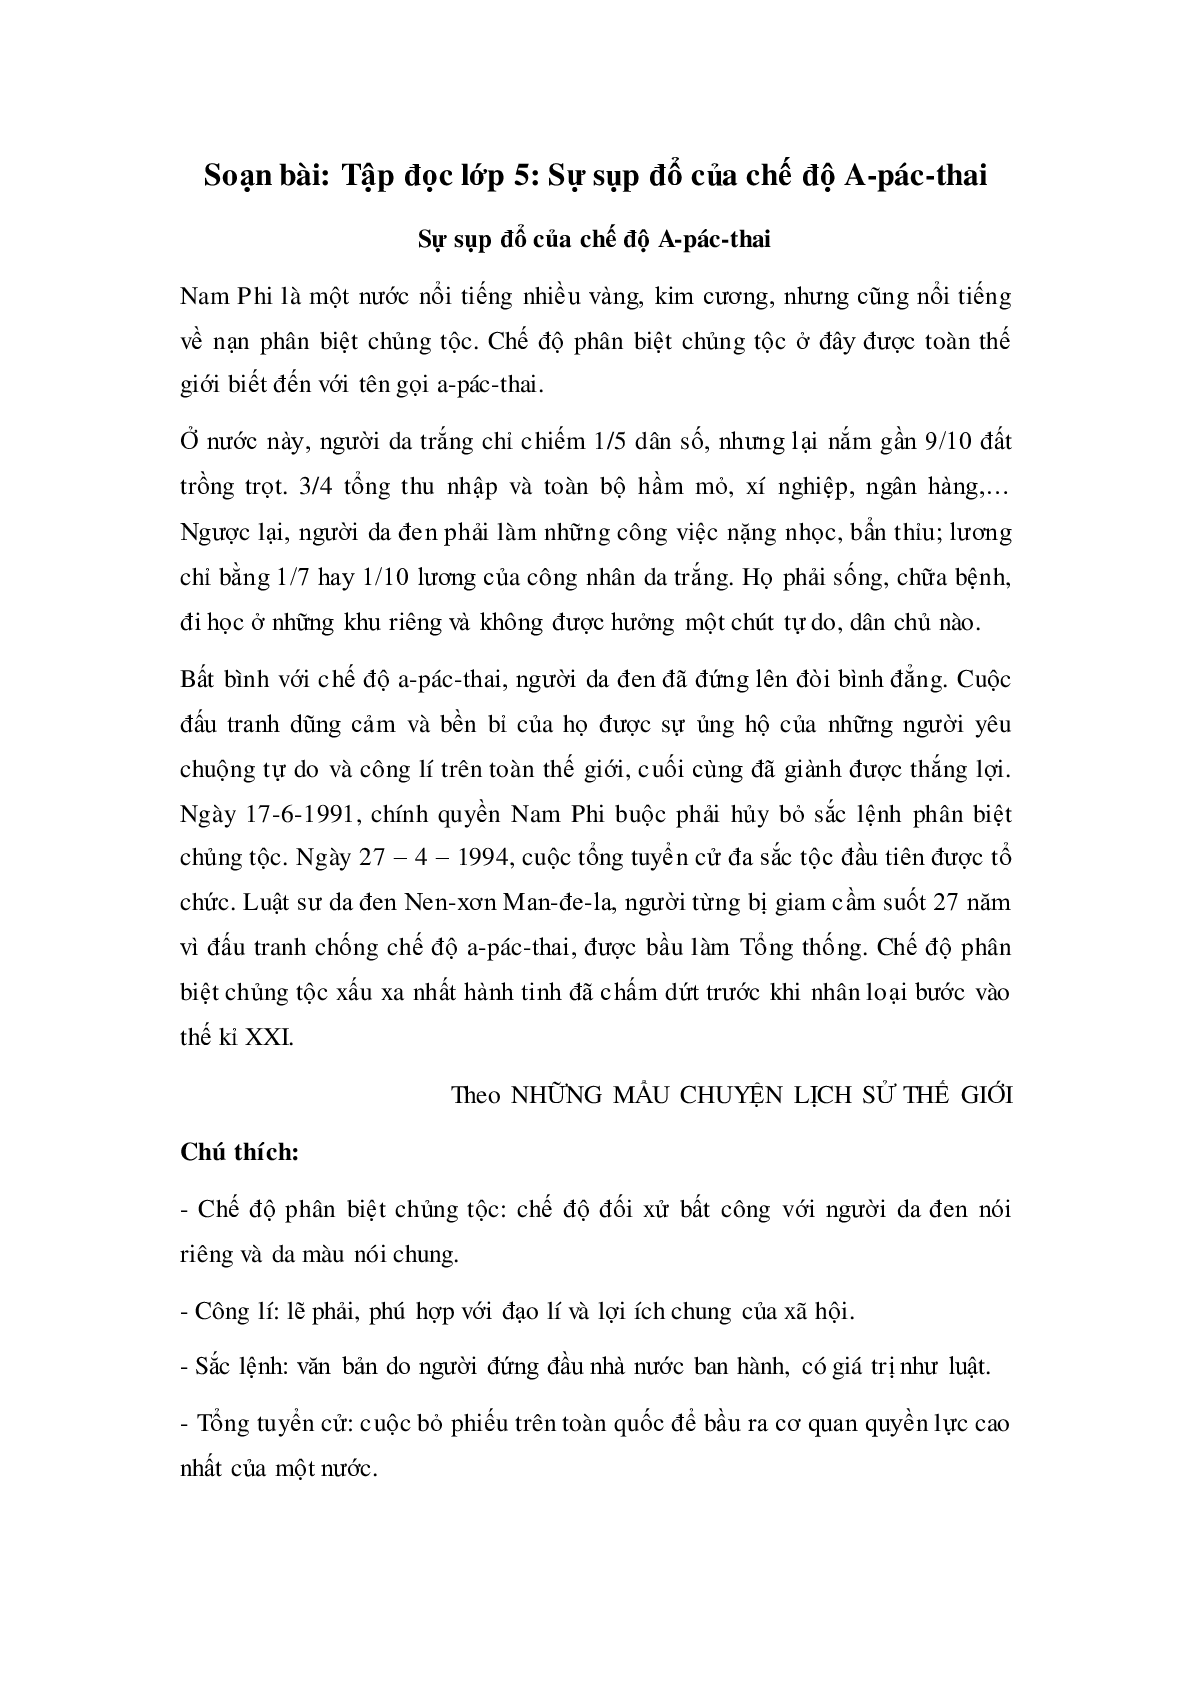 Soạn Tiếng Việt lớp 5: Tập đọc: Sự sụp đổ của chế độ A-pác-thai mới nhất (trang 1)